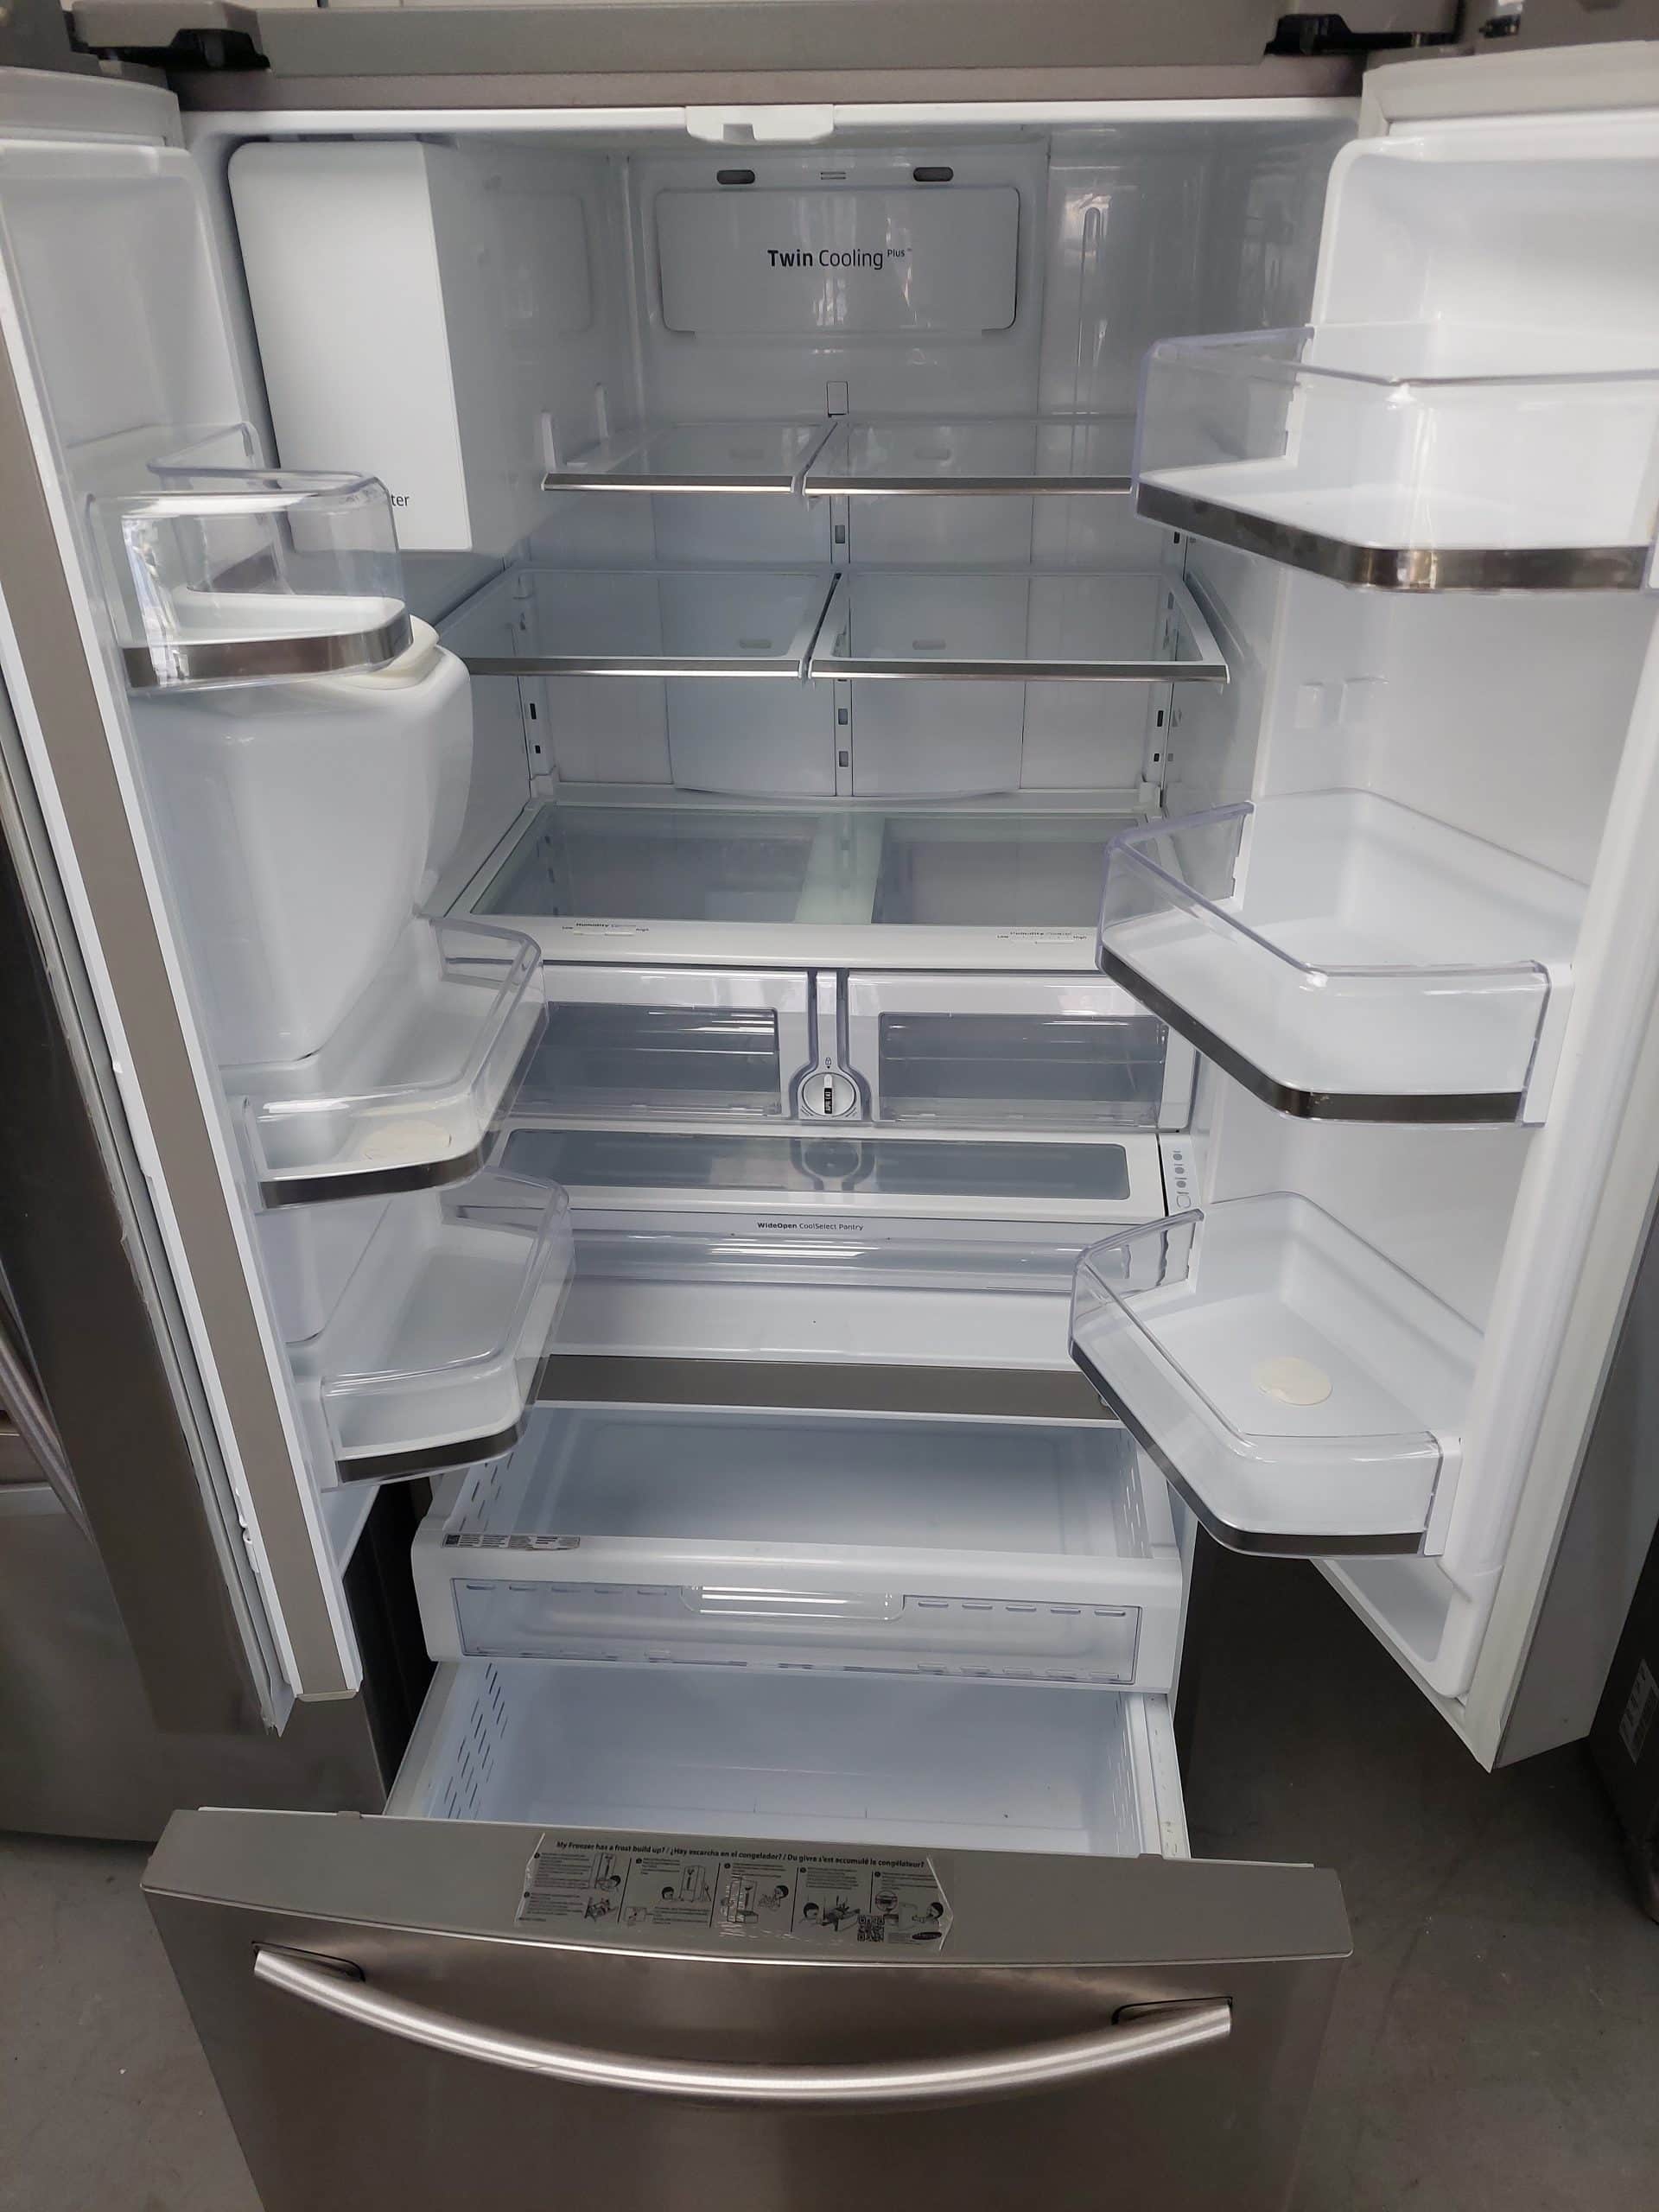 Samsung Réfrigérateur intelligent à portes françaises de 33 pouces